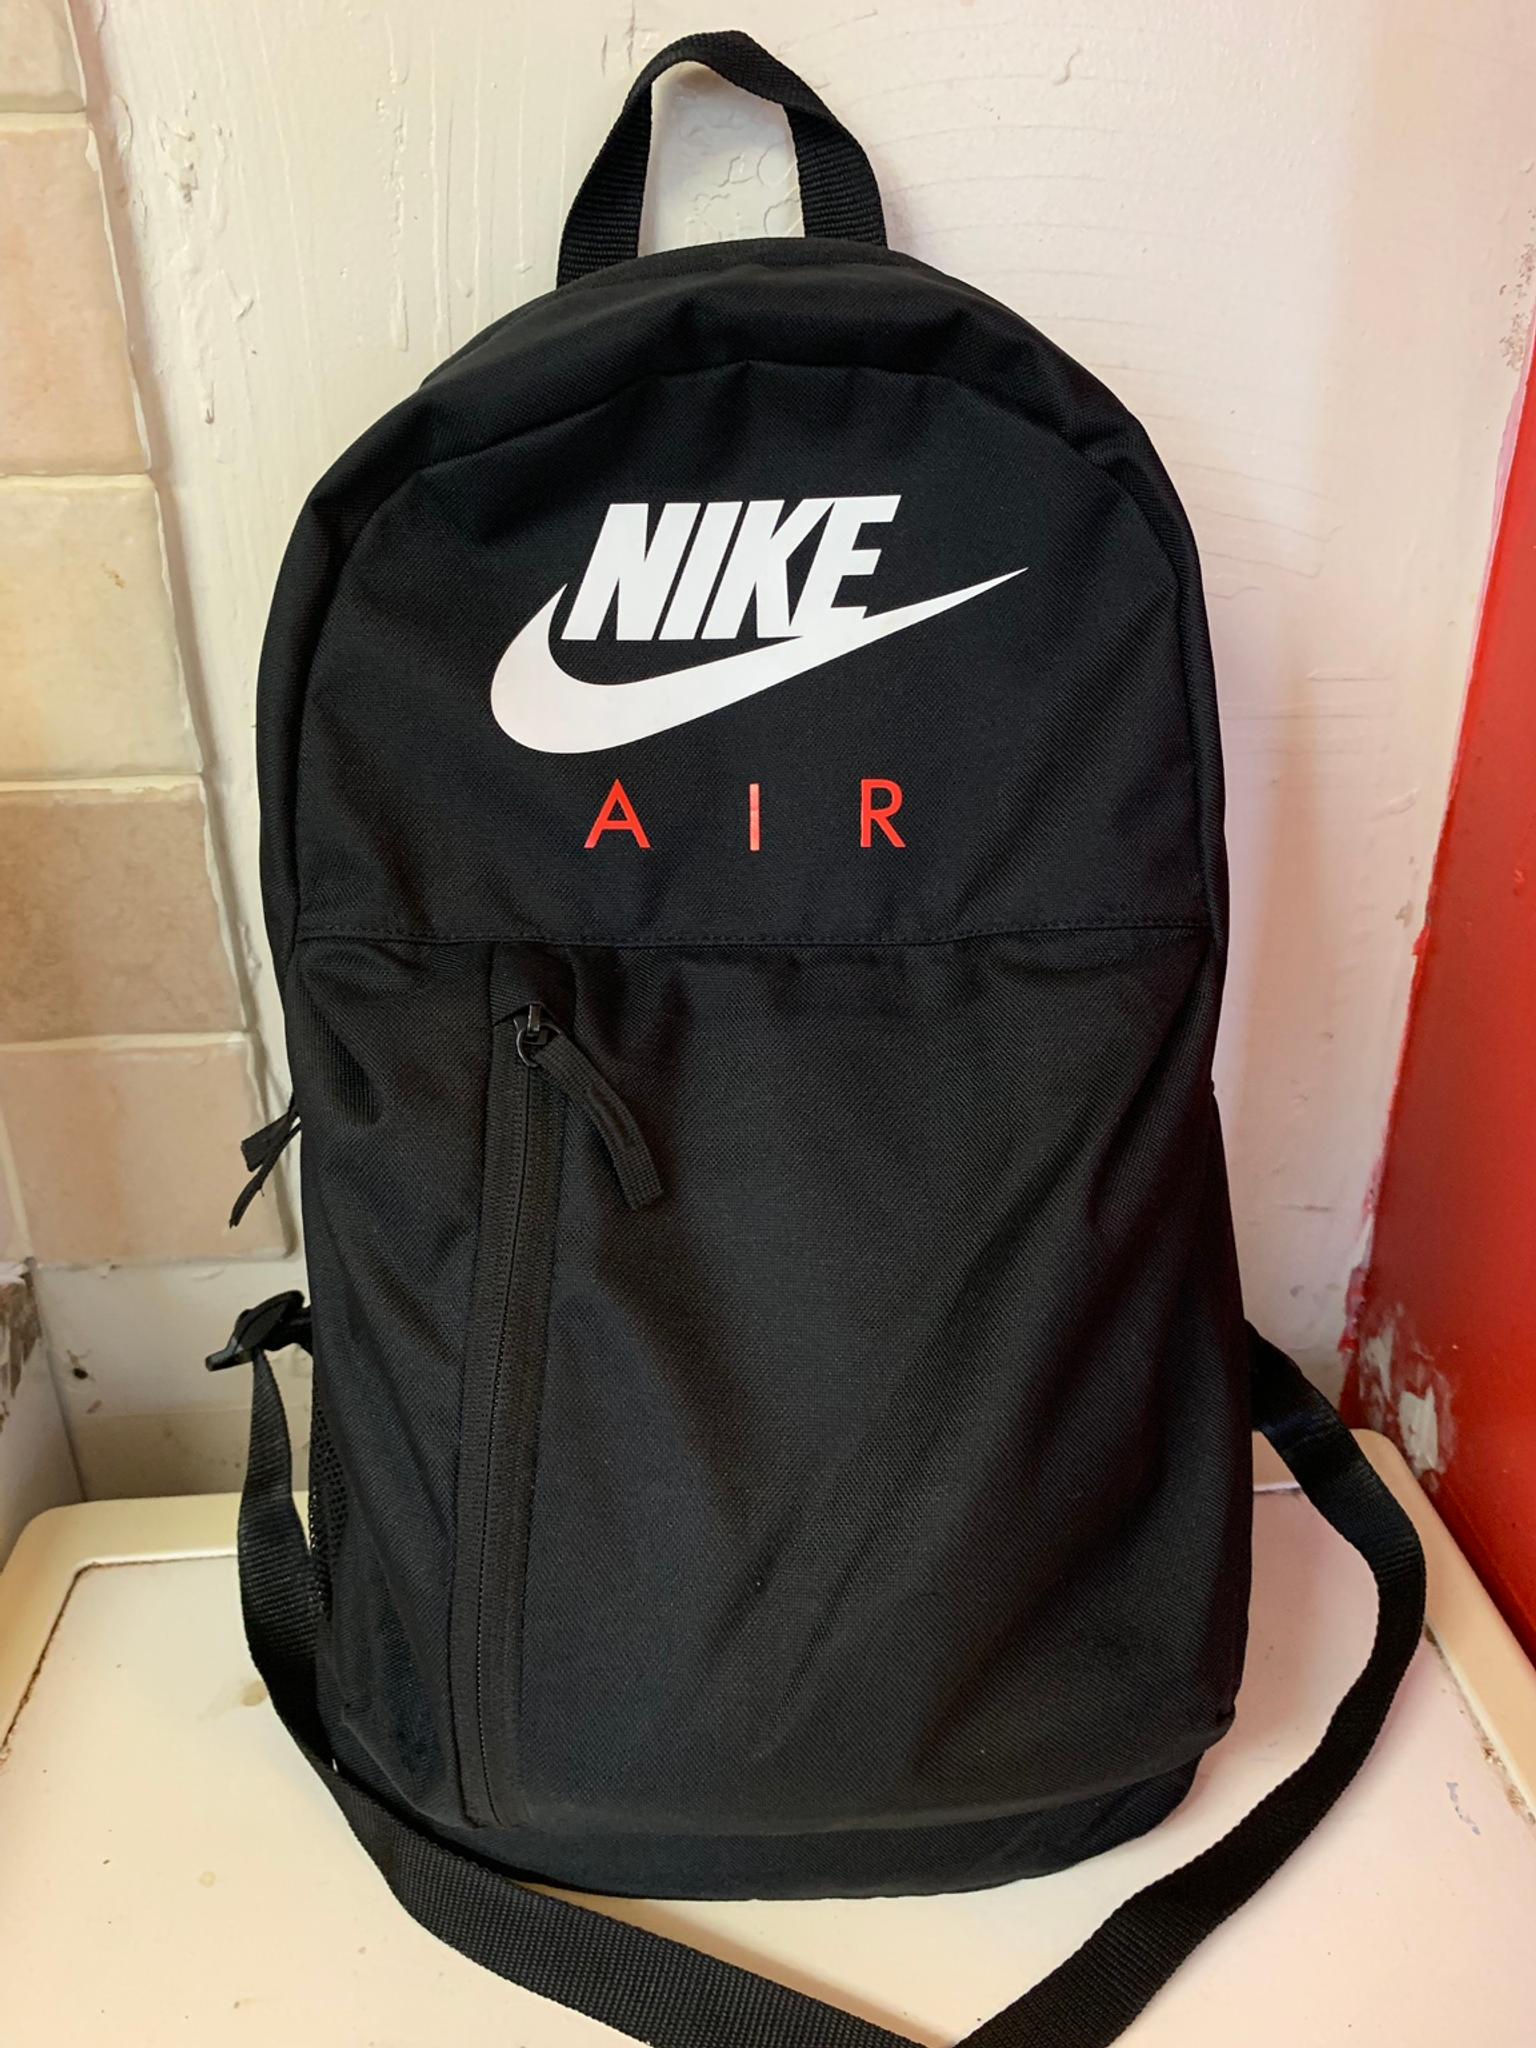 nike air backpack 2017